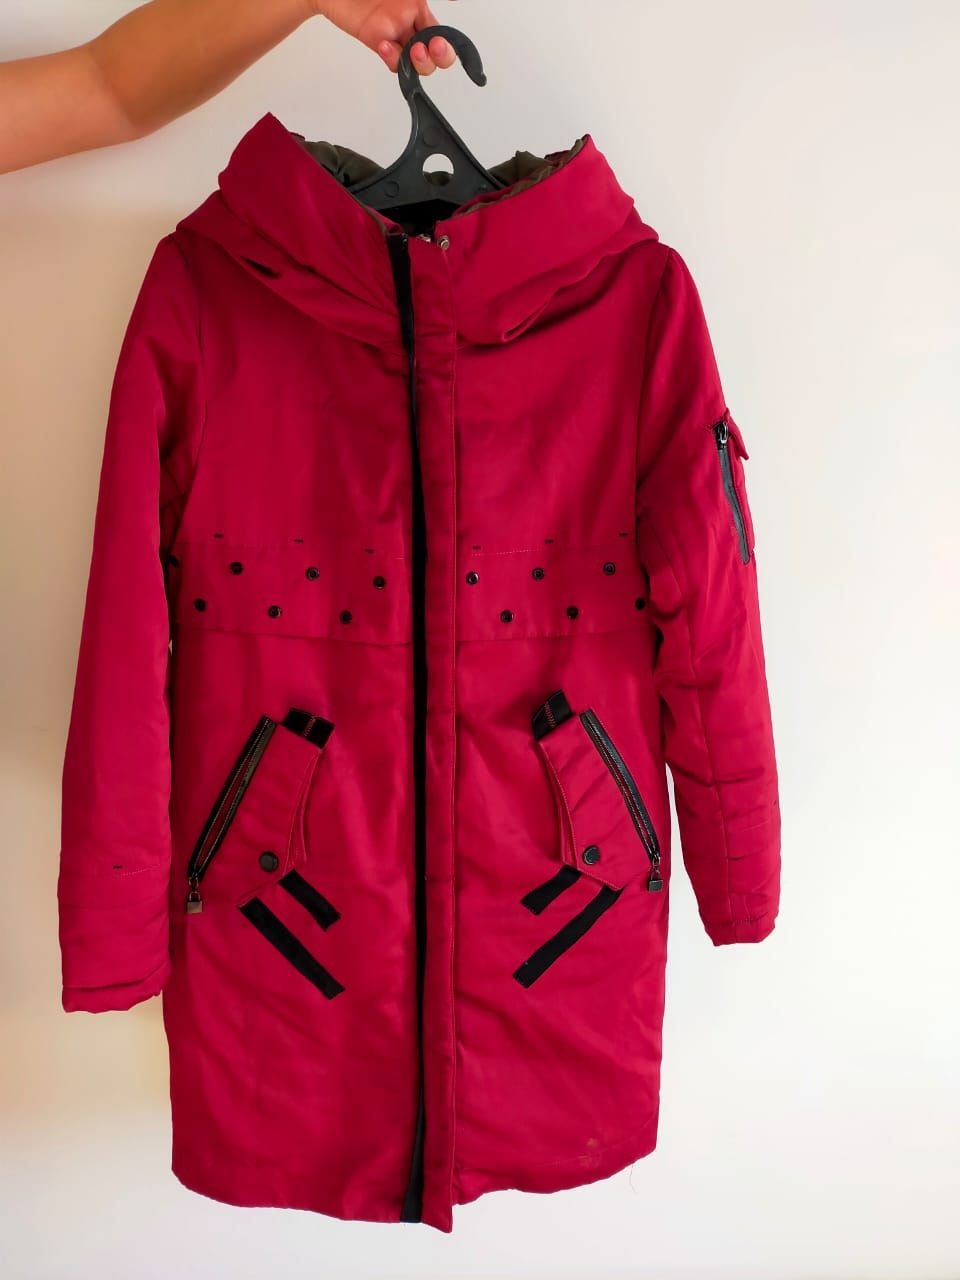 Продам куртку женскую в отличном состоянии за 7000 тг,размер 42-44